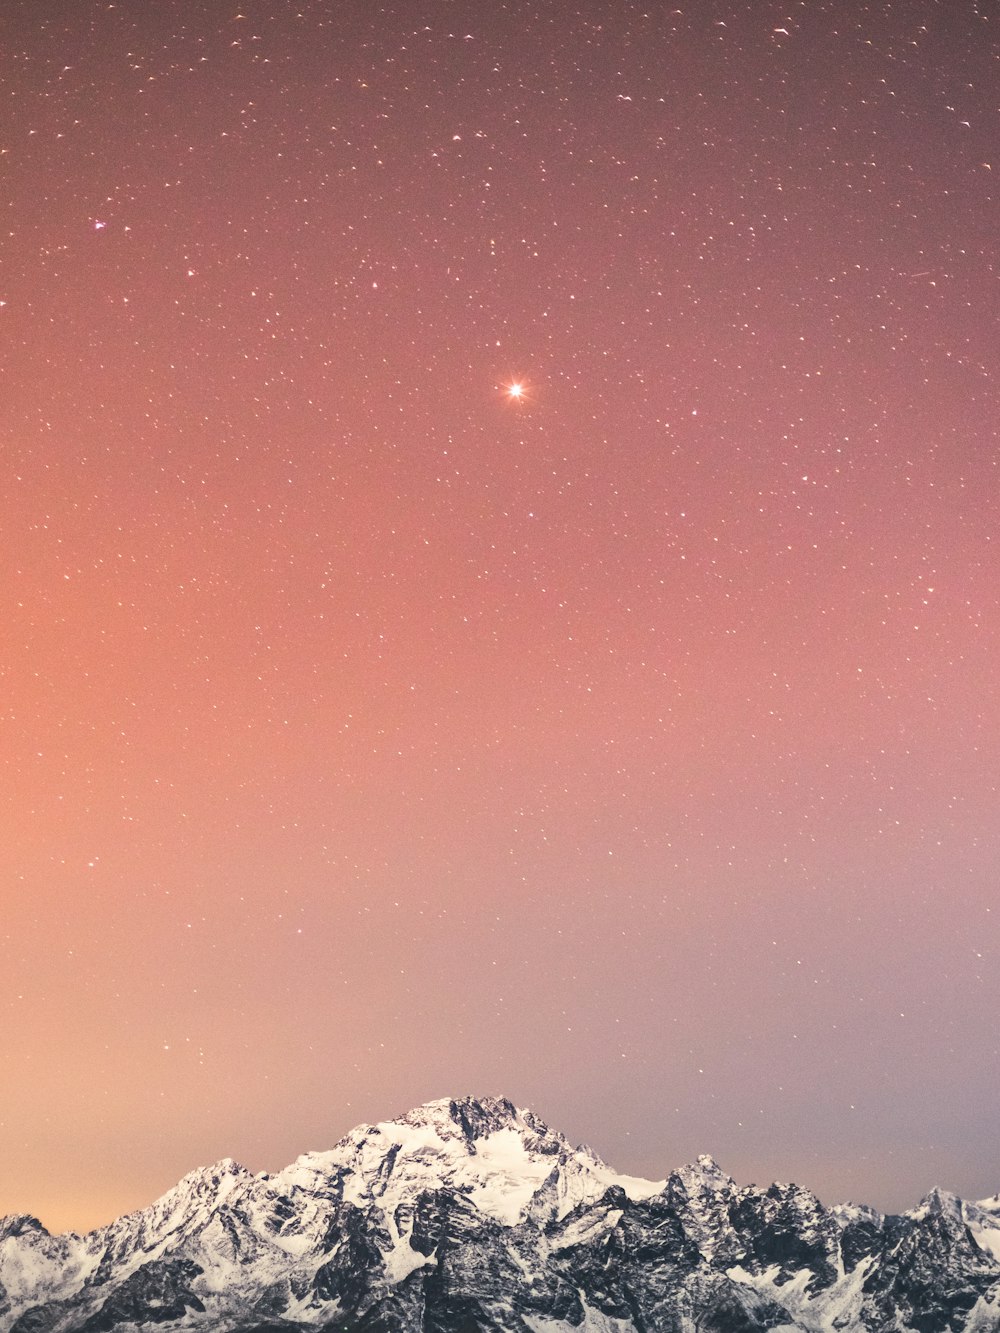 montagne enneigée sous le ciel bleu avec des étoiles pendant la nuit